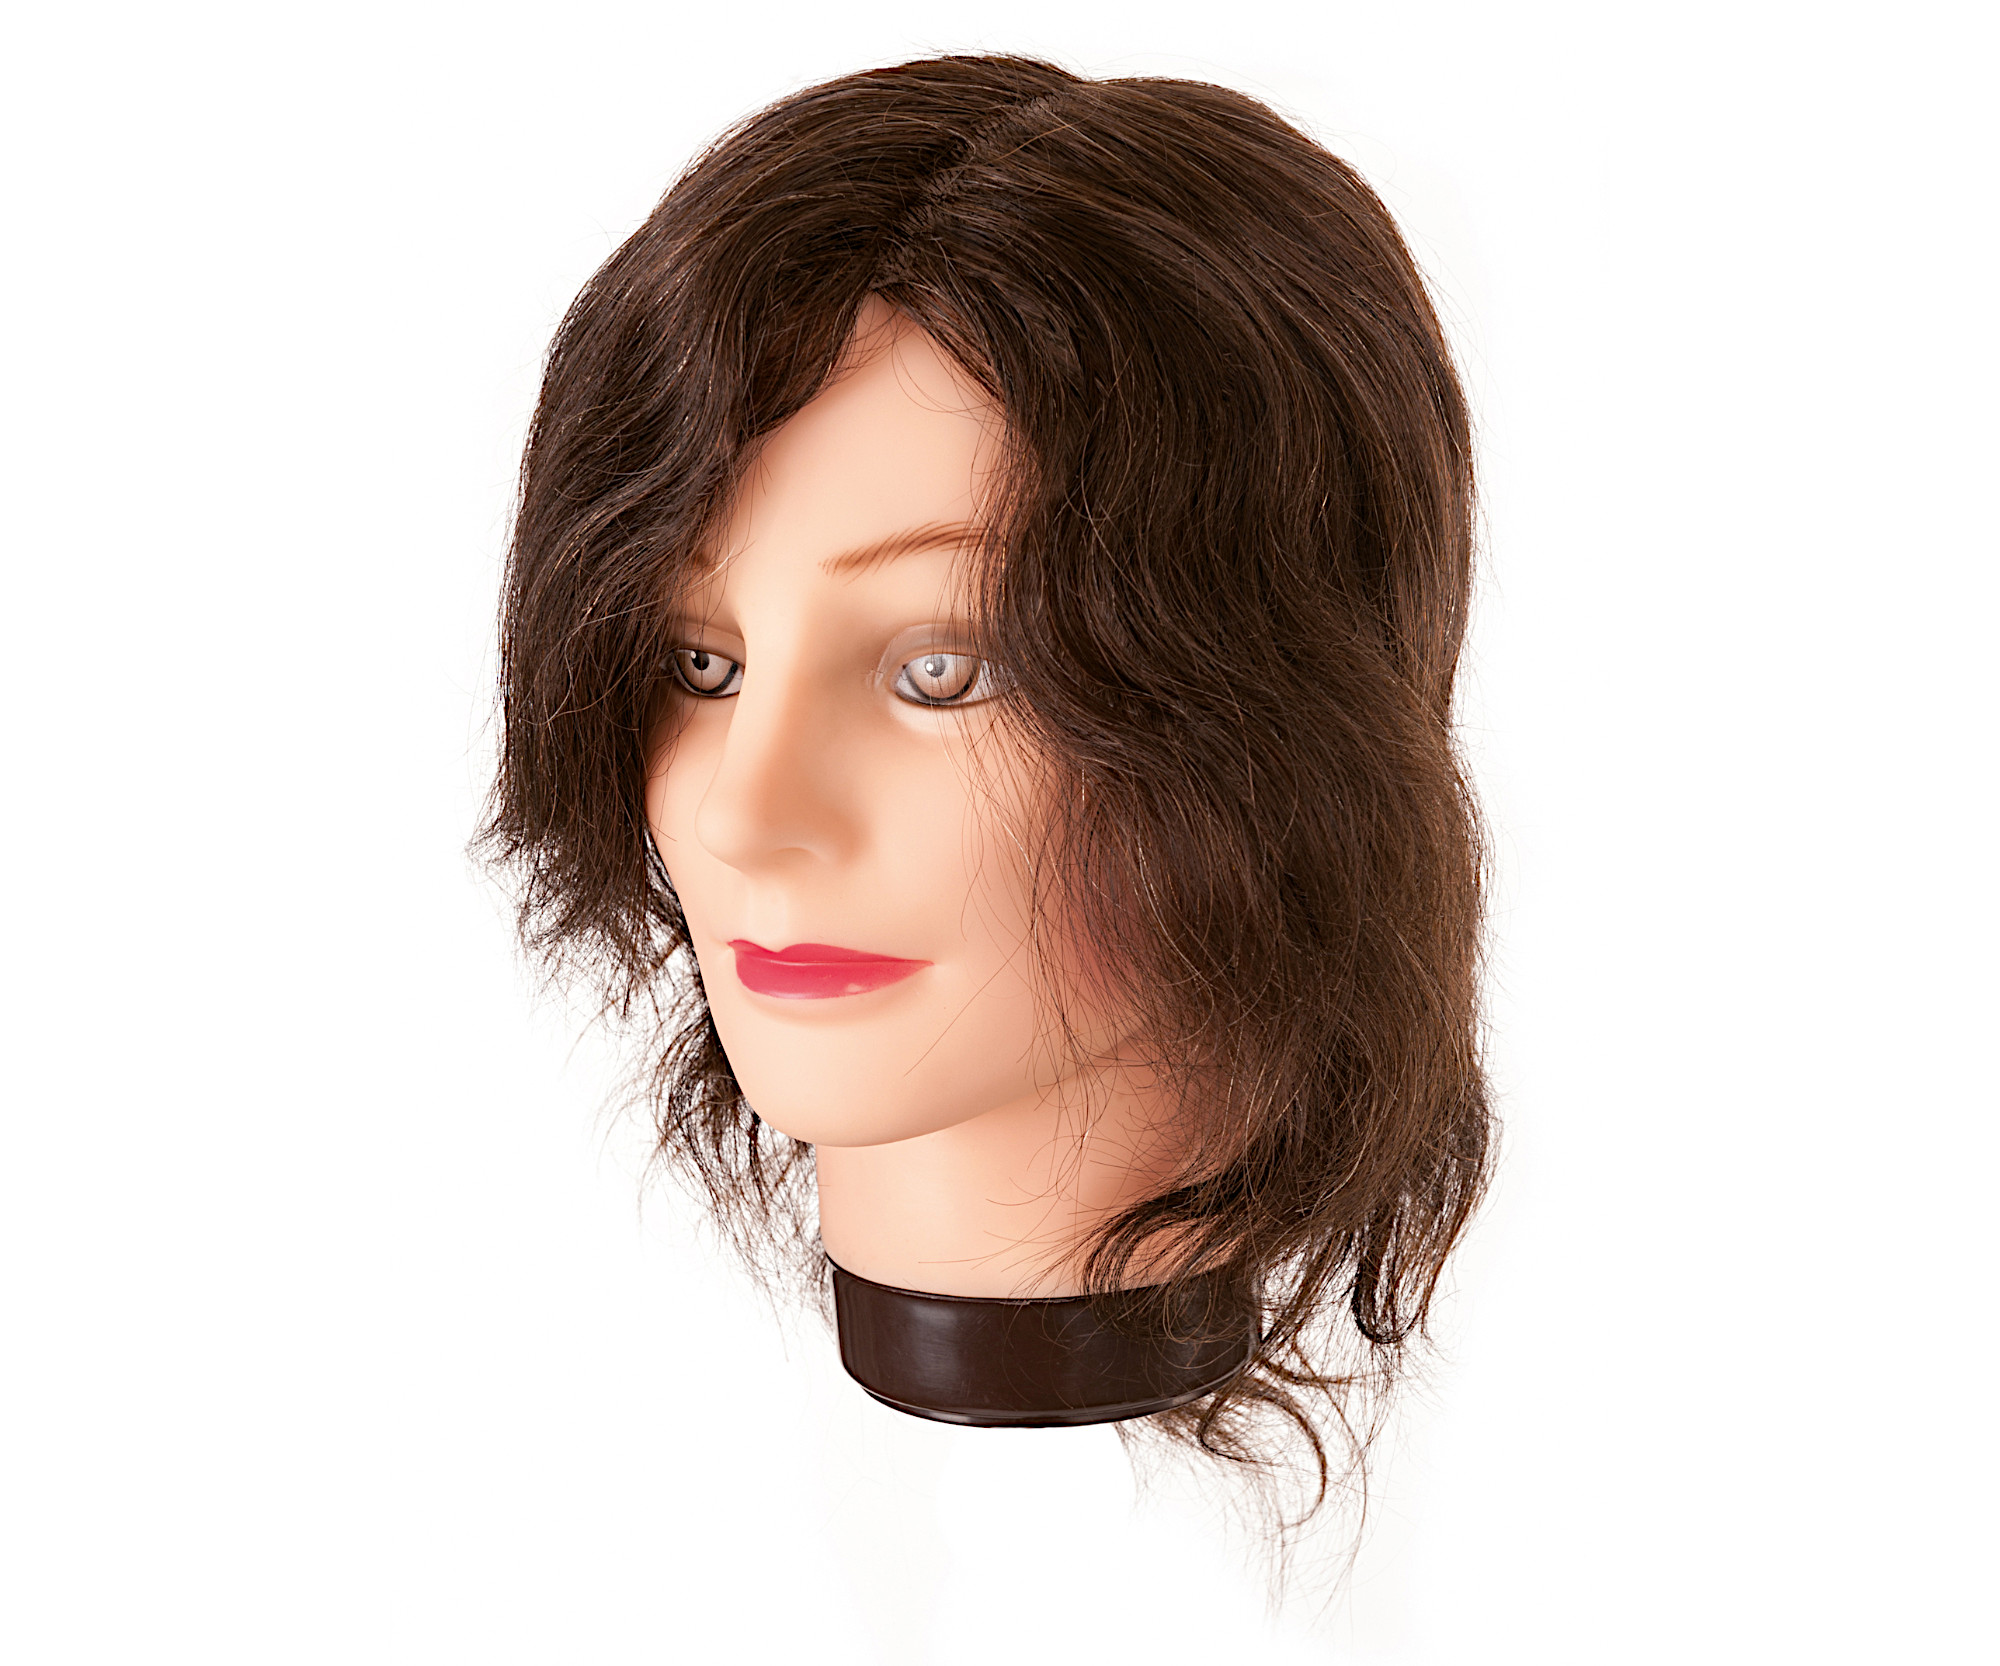 Cvičná hlava s přírodními vlasy Eurostil Profesional - kaštanově hnědá, 20-30 cm (01455) + dárek zdarma